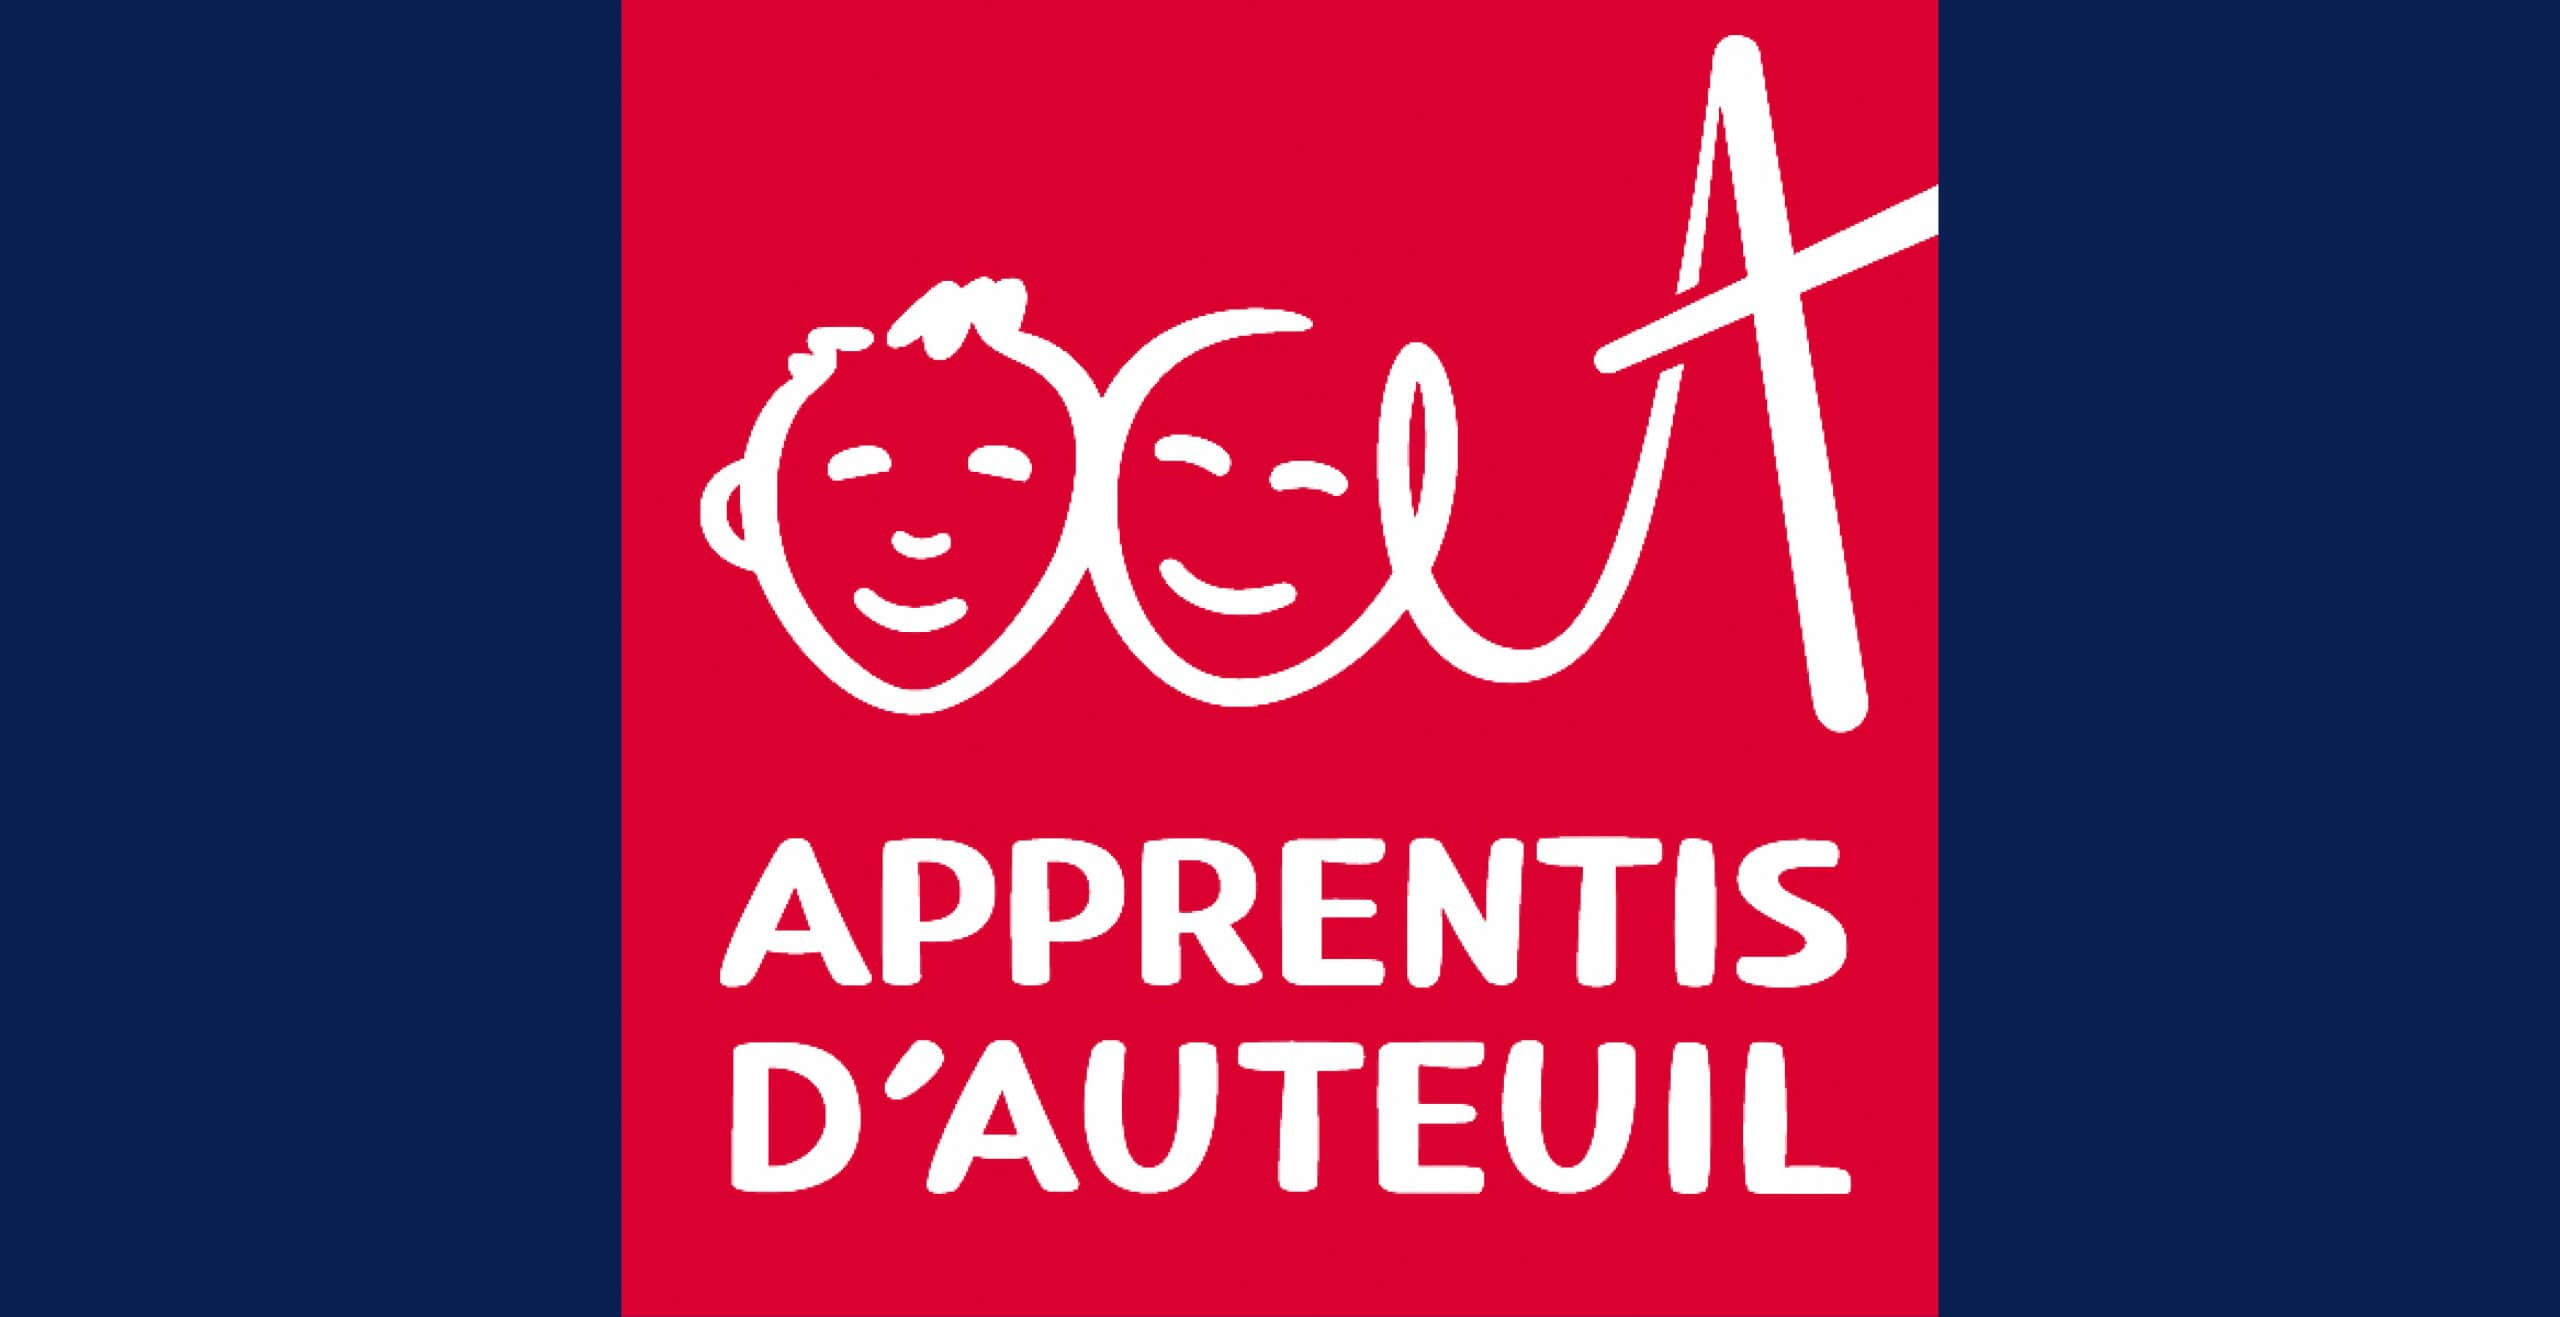 Logo Apprentis Auteuil